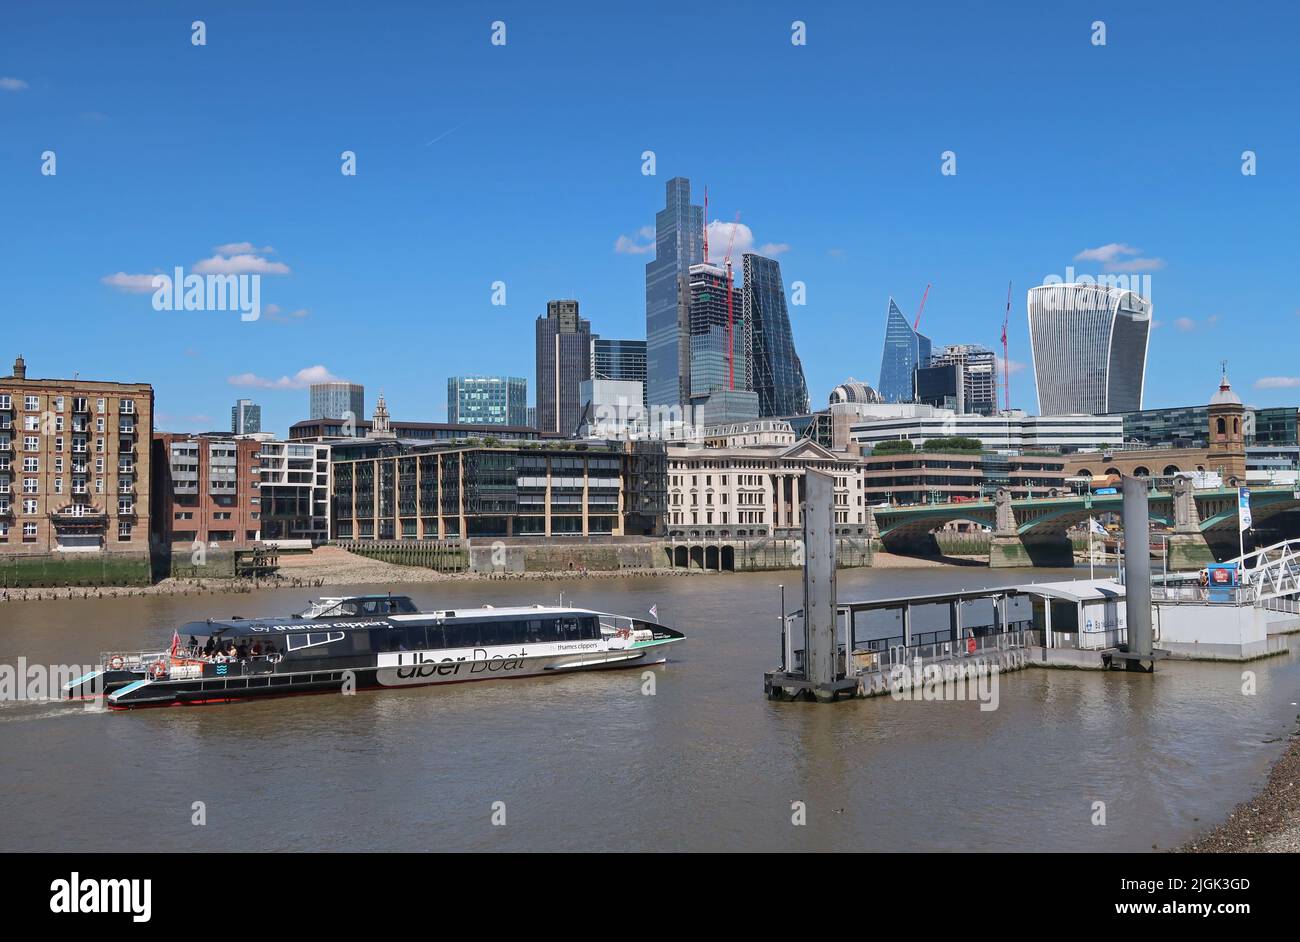 Ein Uber-Flussboot kommt am Bankside Pier am Südufer der Themse an. Skyline von London. Stockfoto